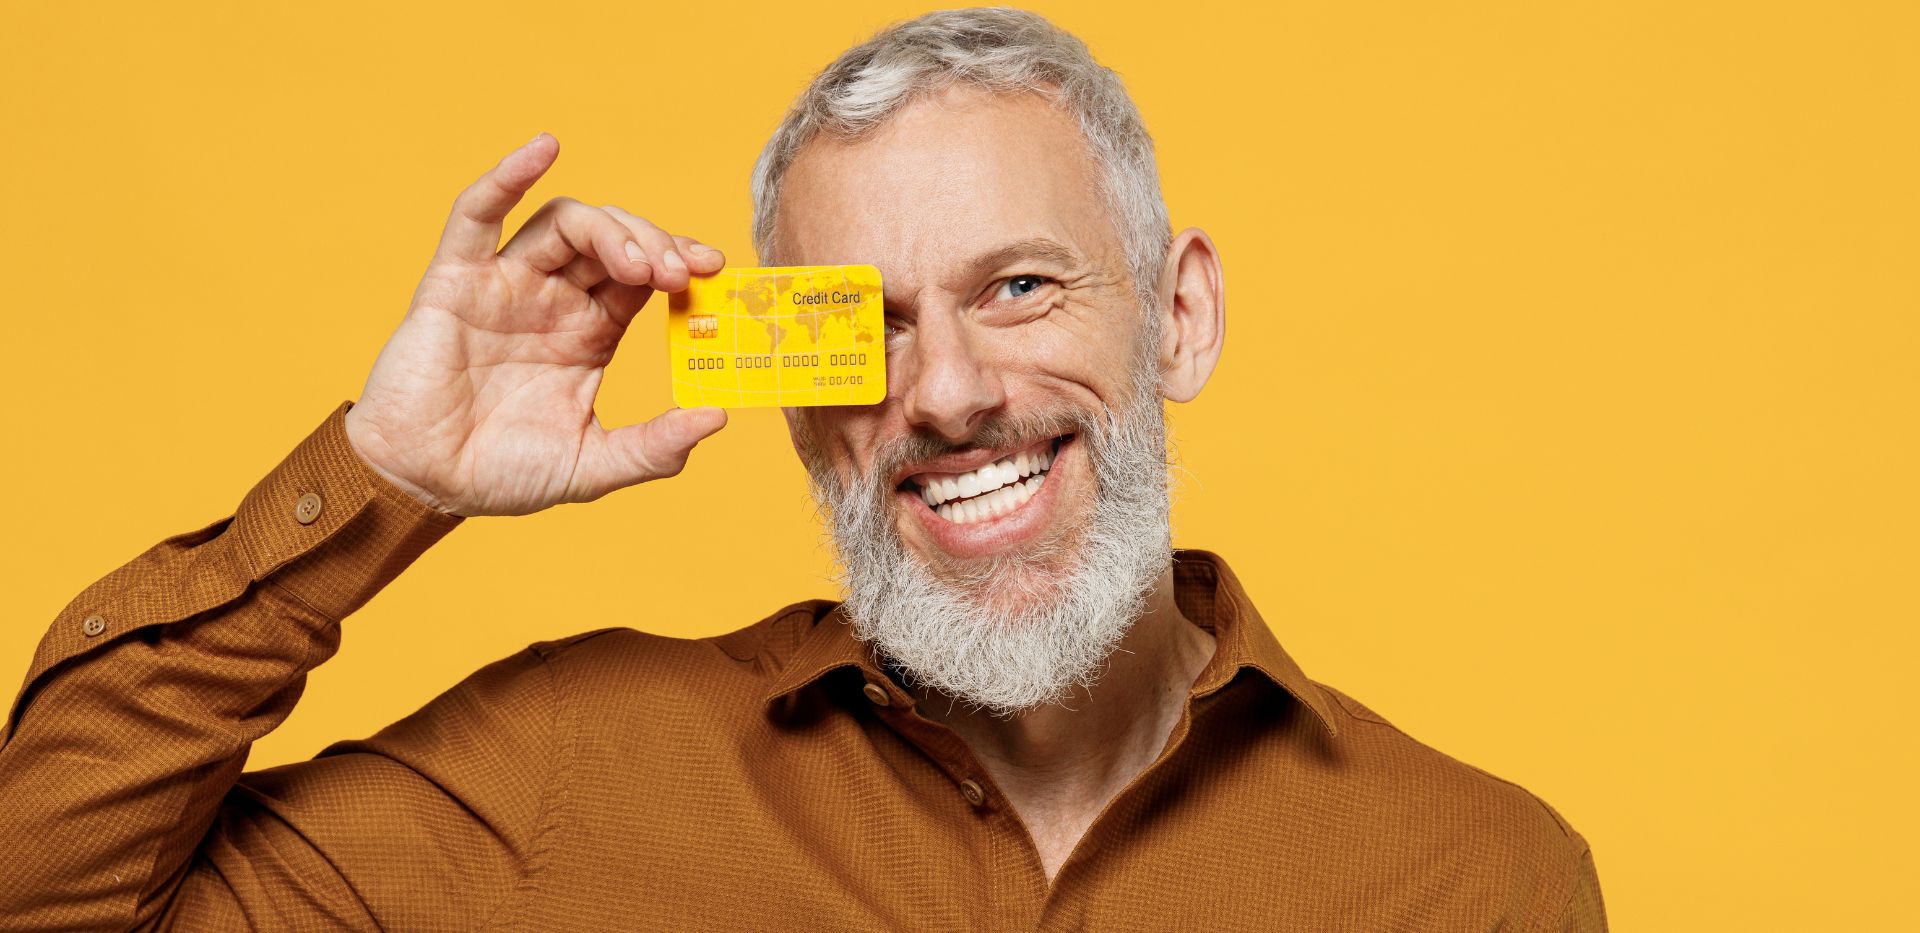 Uśmiechający się mężczyzna z siwą brodą trzymający kartę kredytową